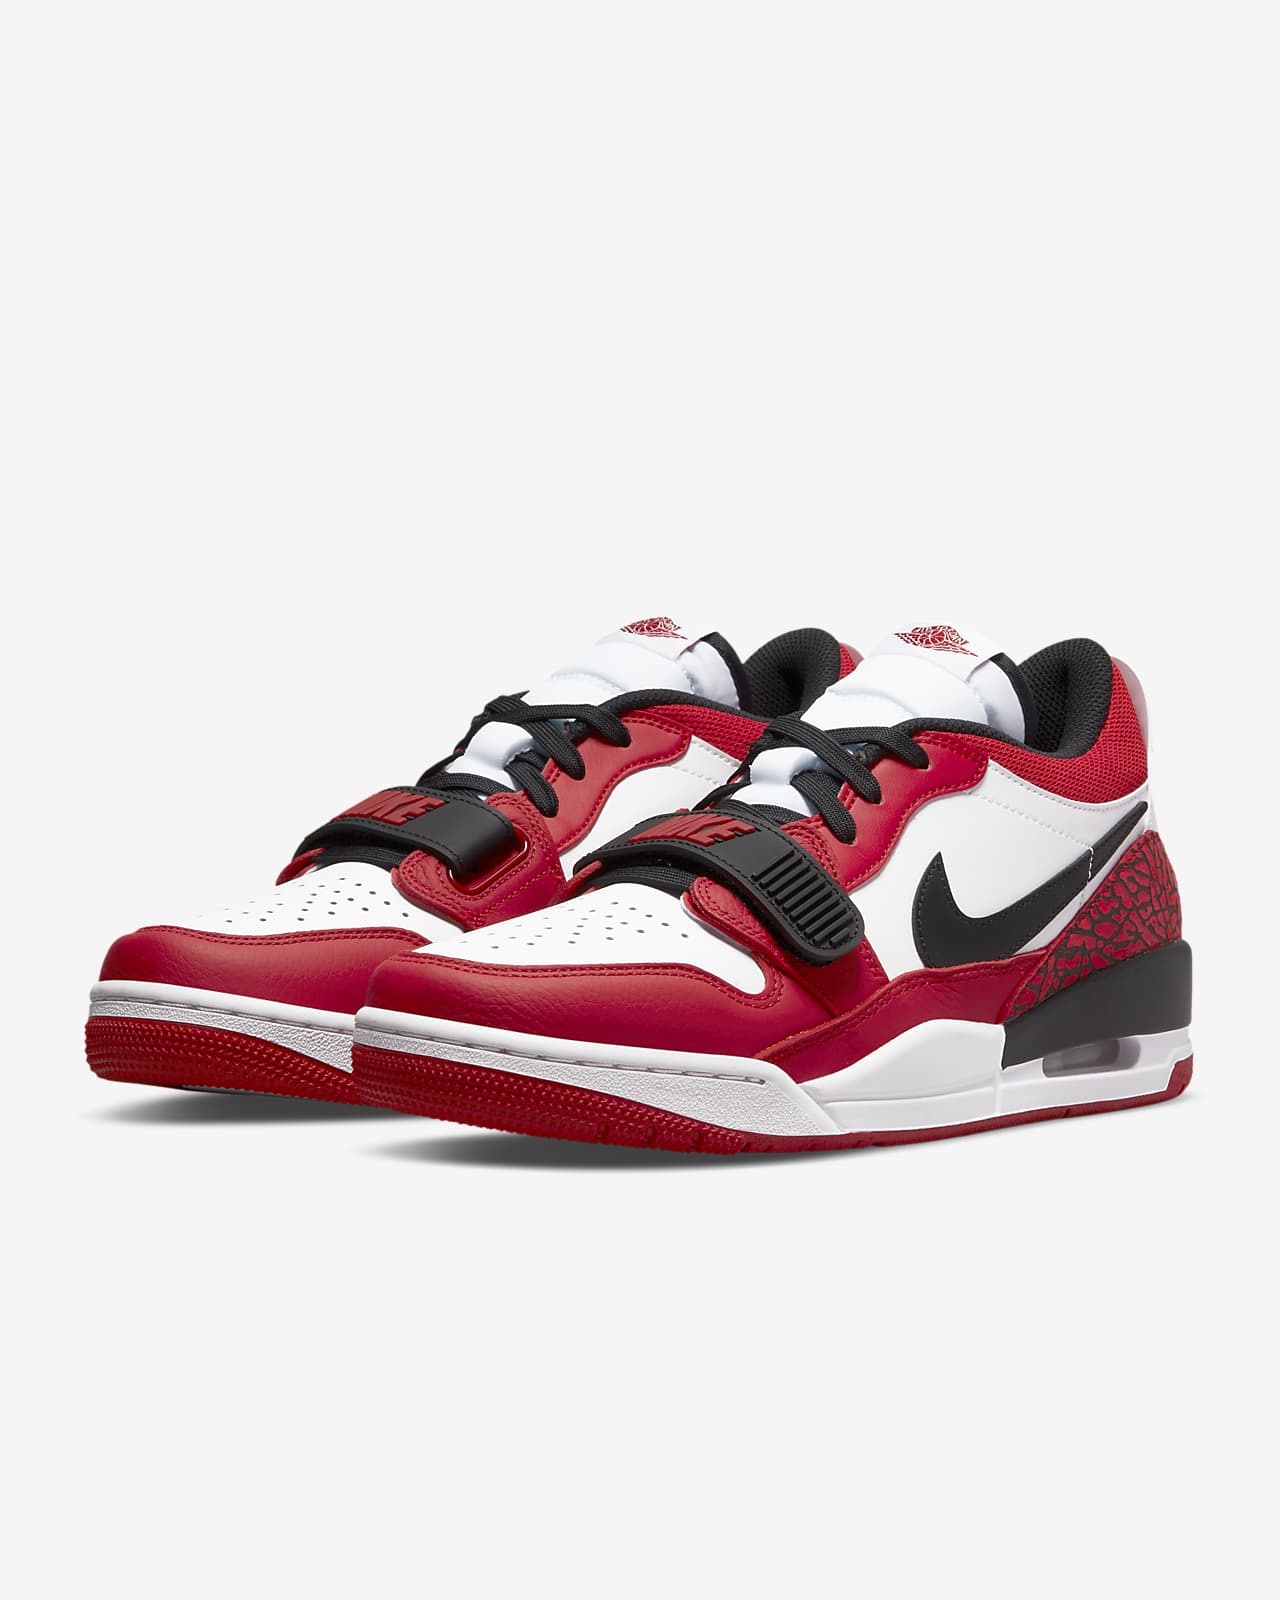 Air Jordan Legacy 312 Low Men #39 s Shoes Nike LU